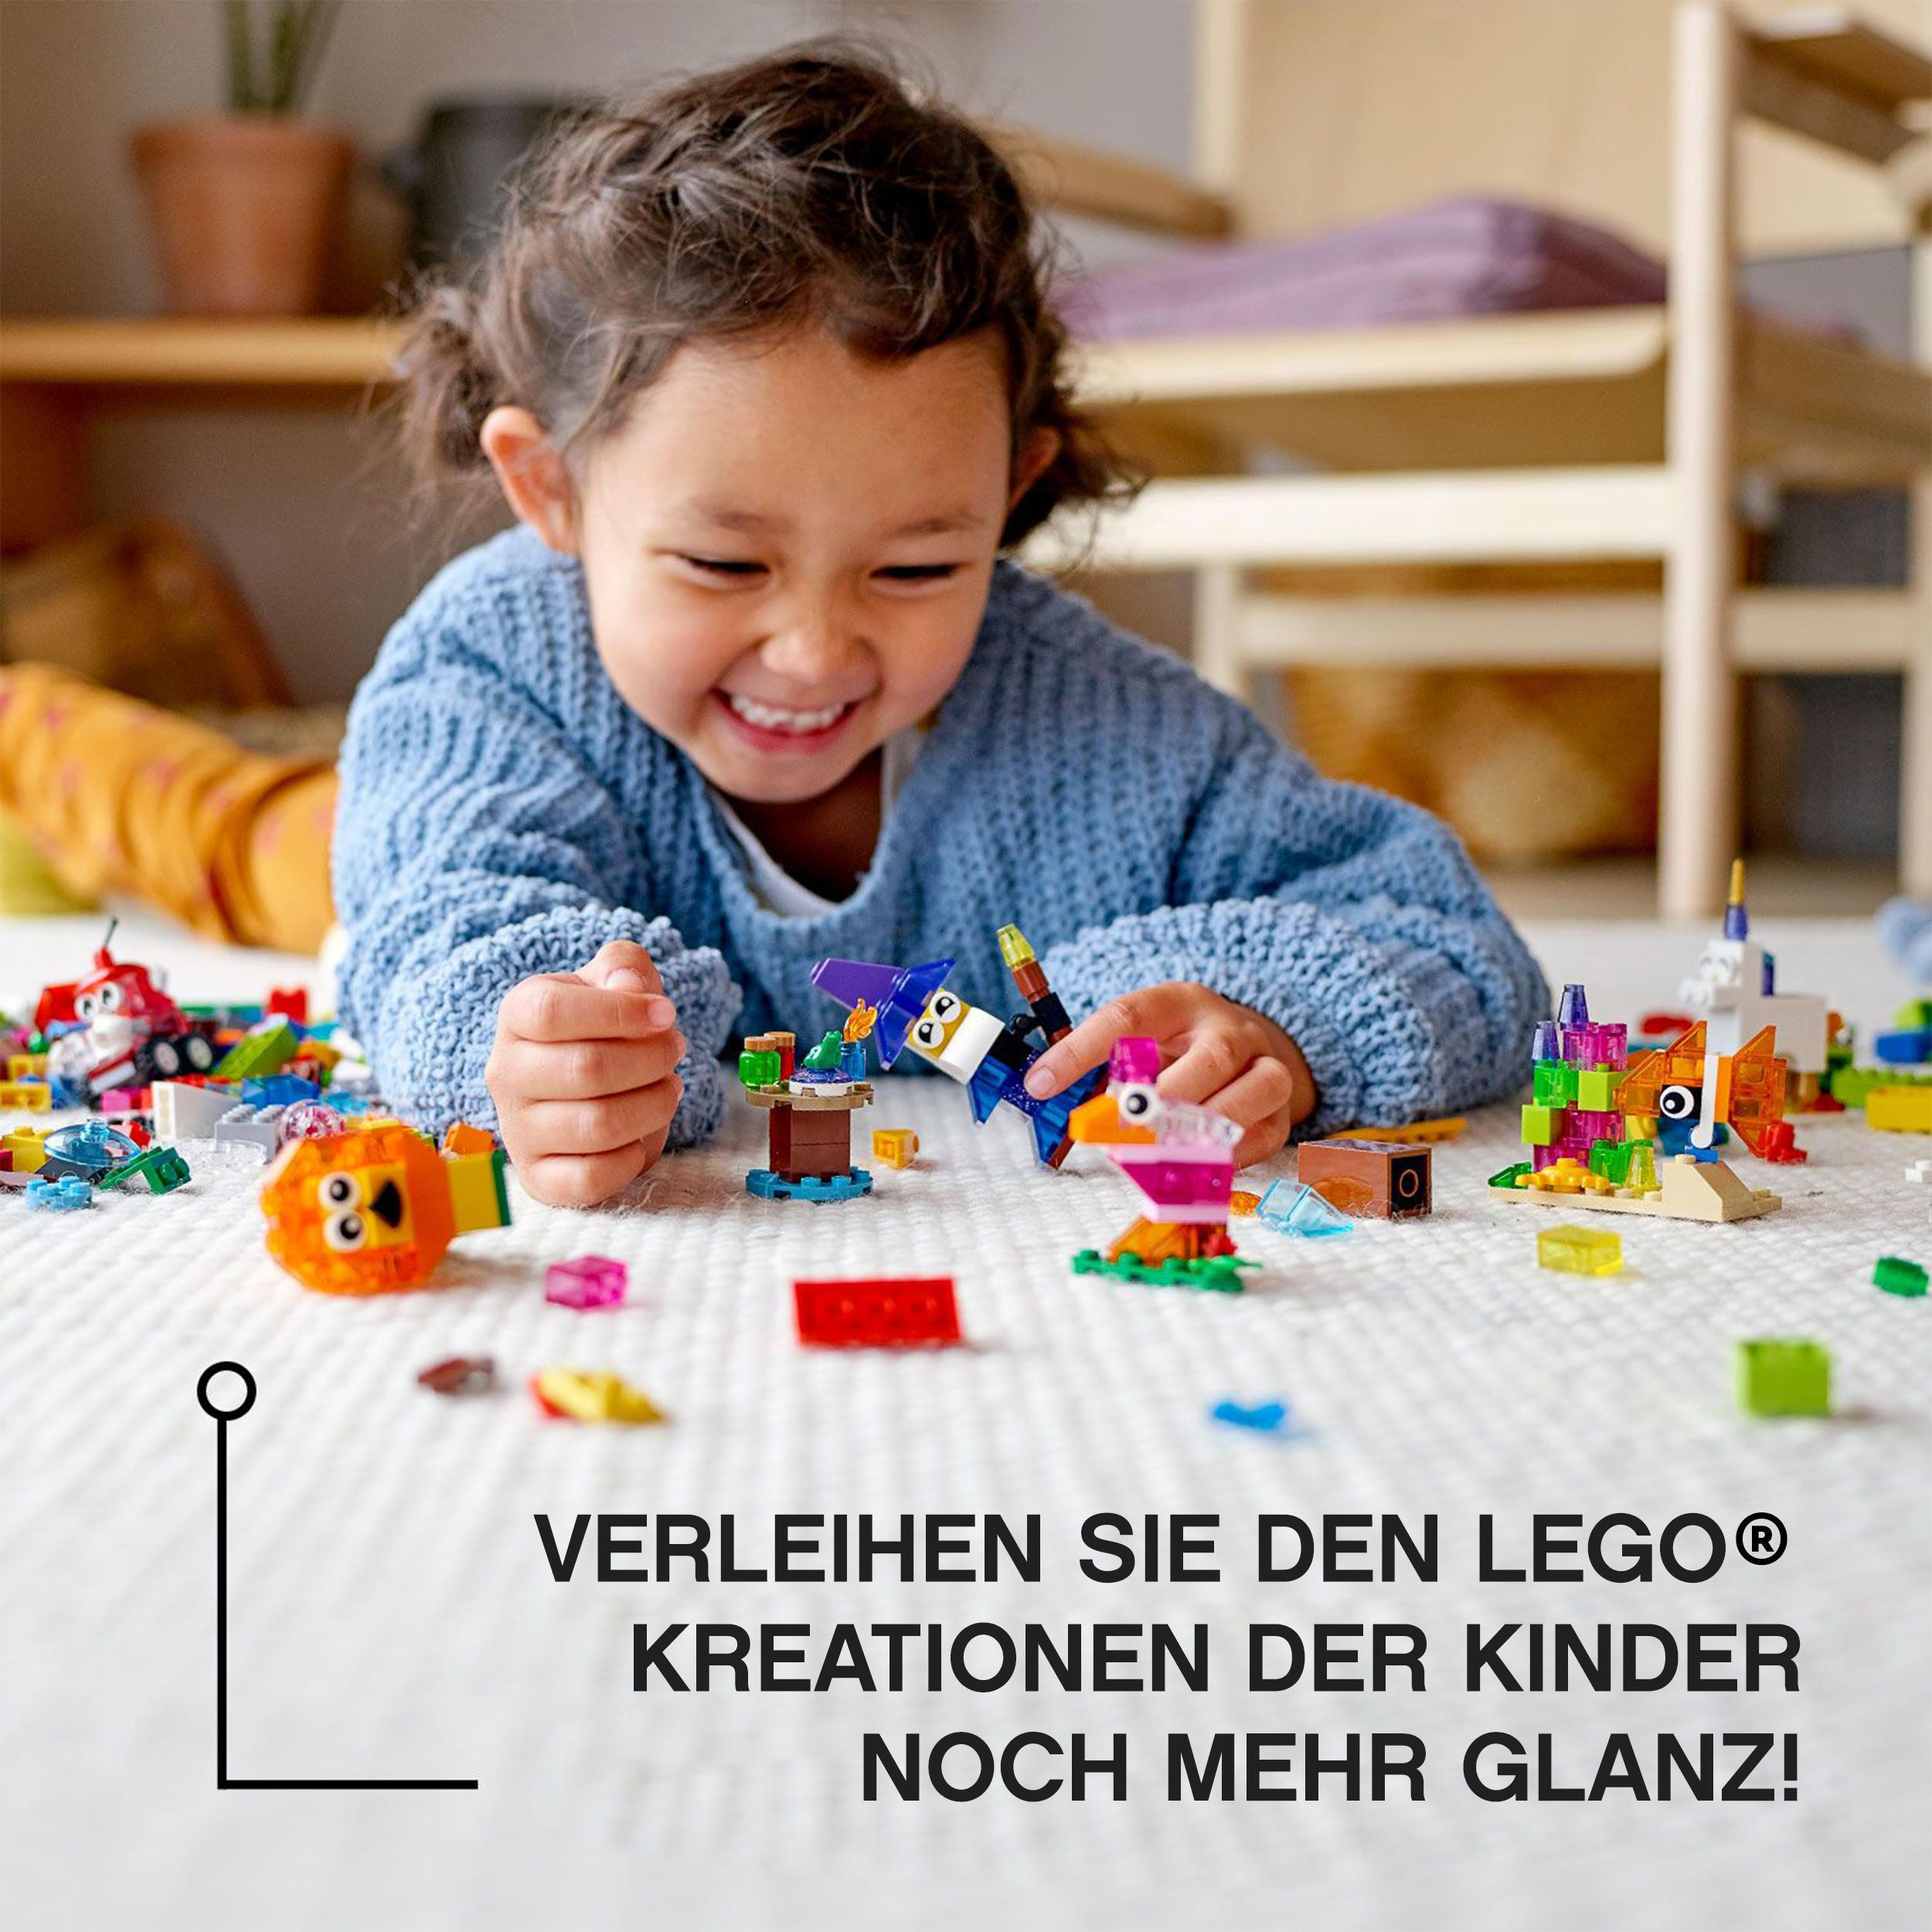 Kreativ-Bauset 11013 durchsichtigen LEGO Steinen Classic Mehrfarbig Bausatz, mit